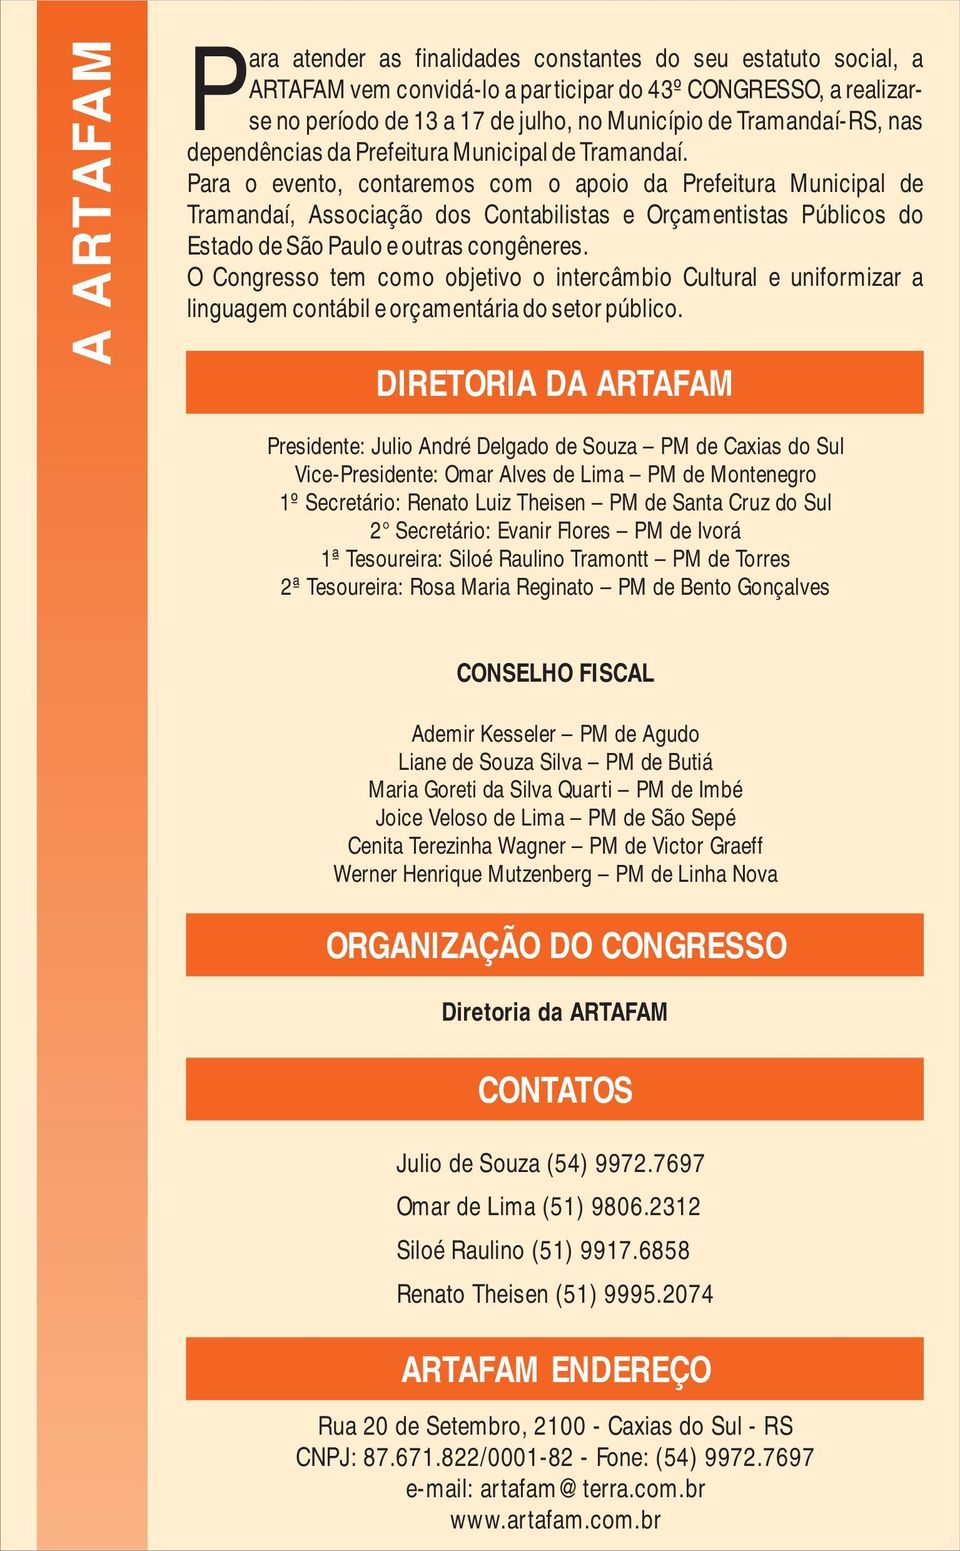 Para o evento, contaremos com o apoio da Prefeitura Municipal de Tramandaí, Associação dos Contabilistas e Orçamentistas Públicos do Estado de São Paulo e outras congêneres.